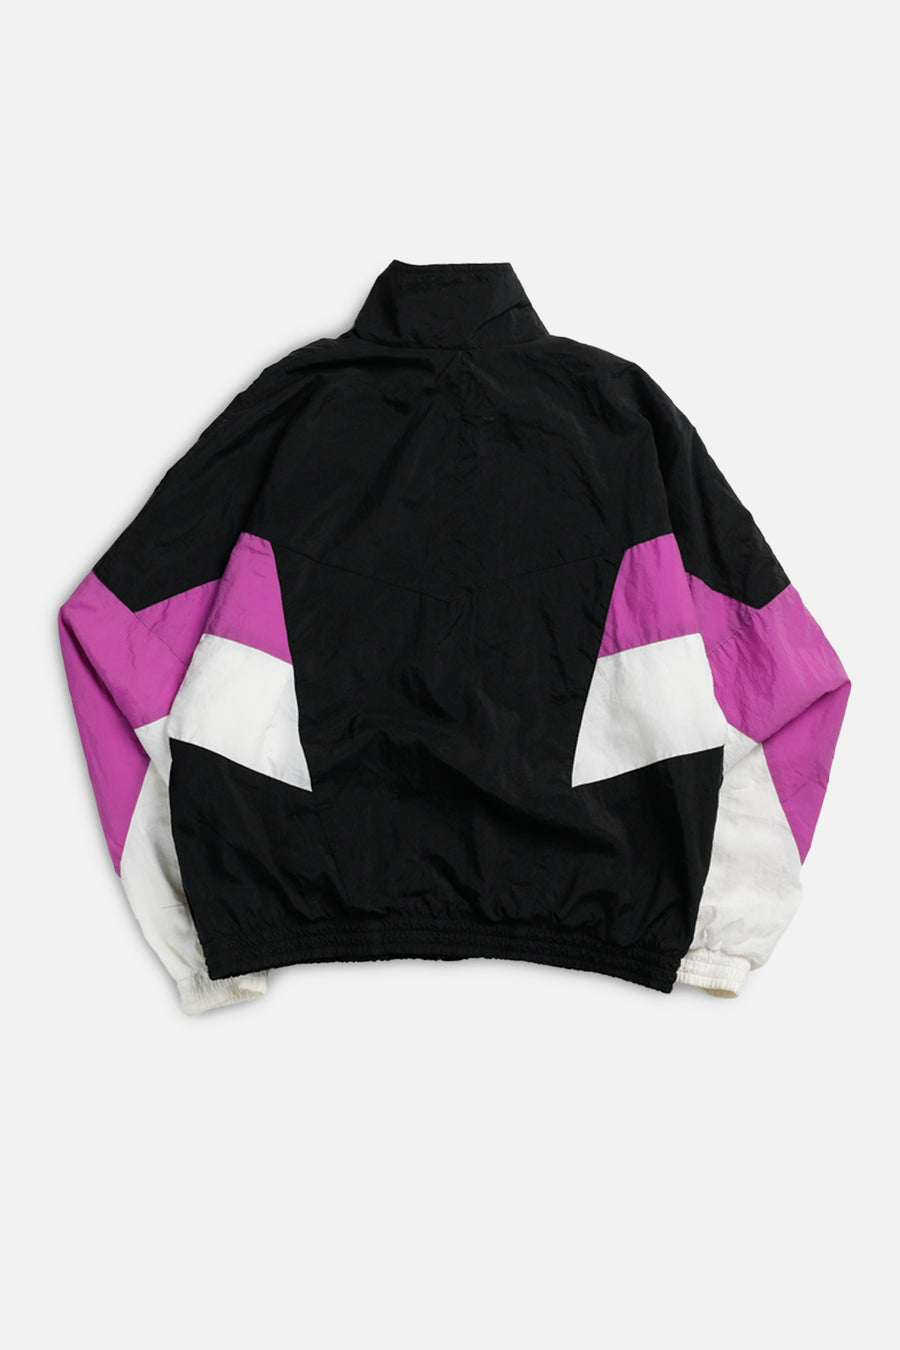 Vintage Nike Windbreaker Jacket - Women's S